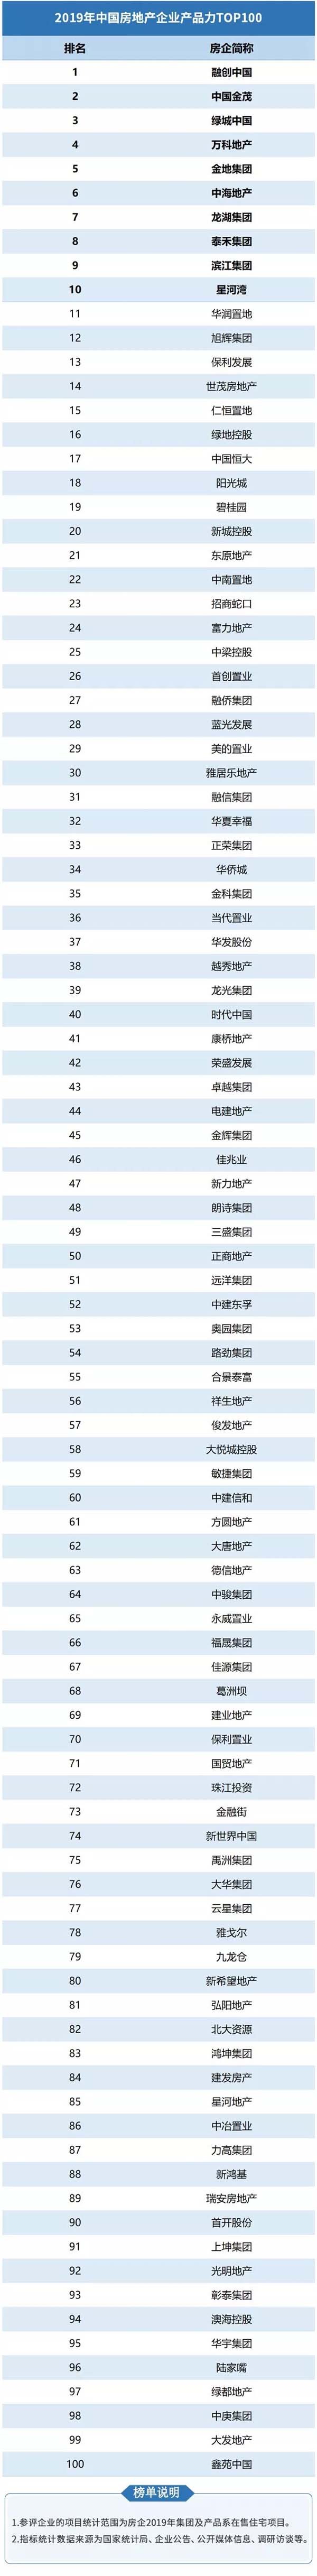 《中国房地产企业产品力TOP100》